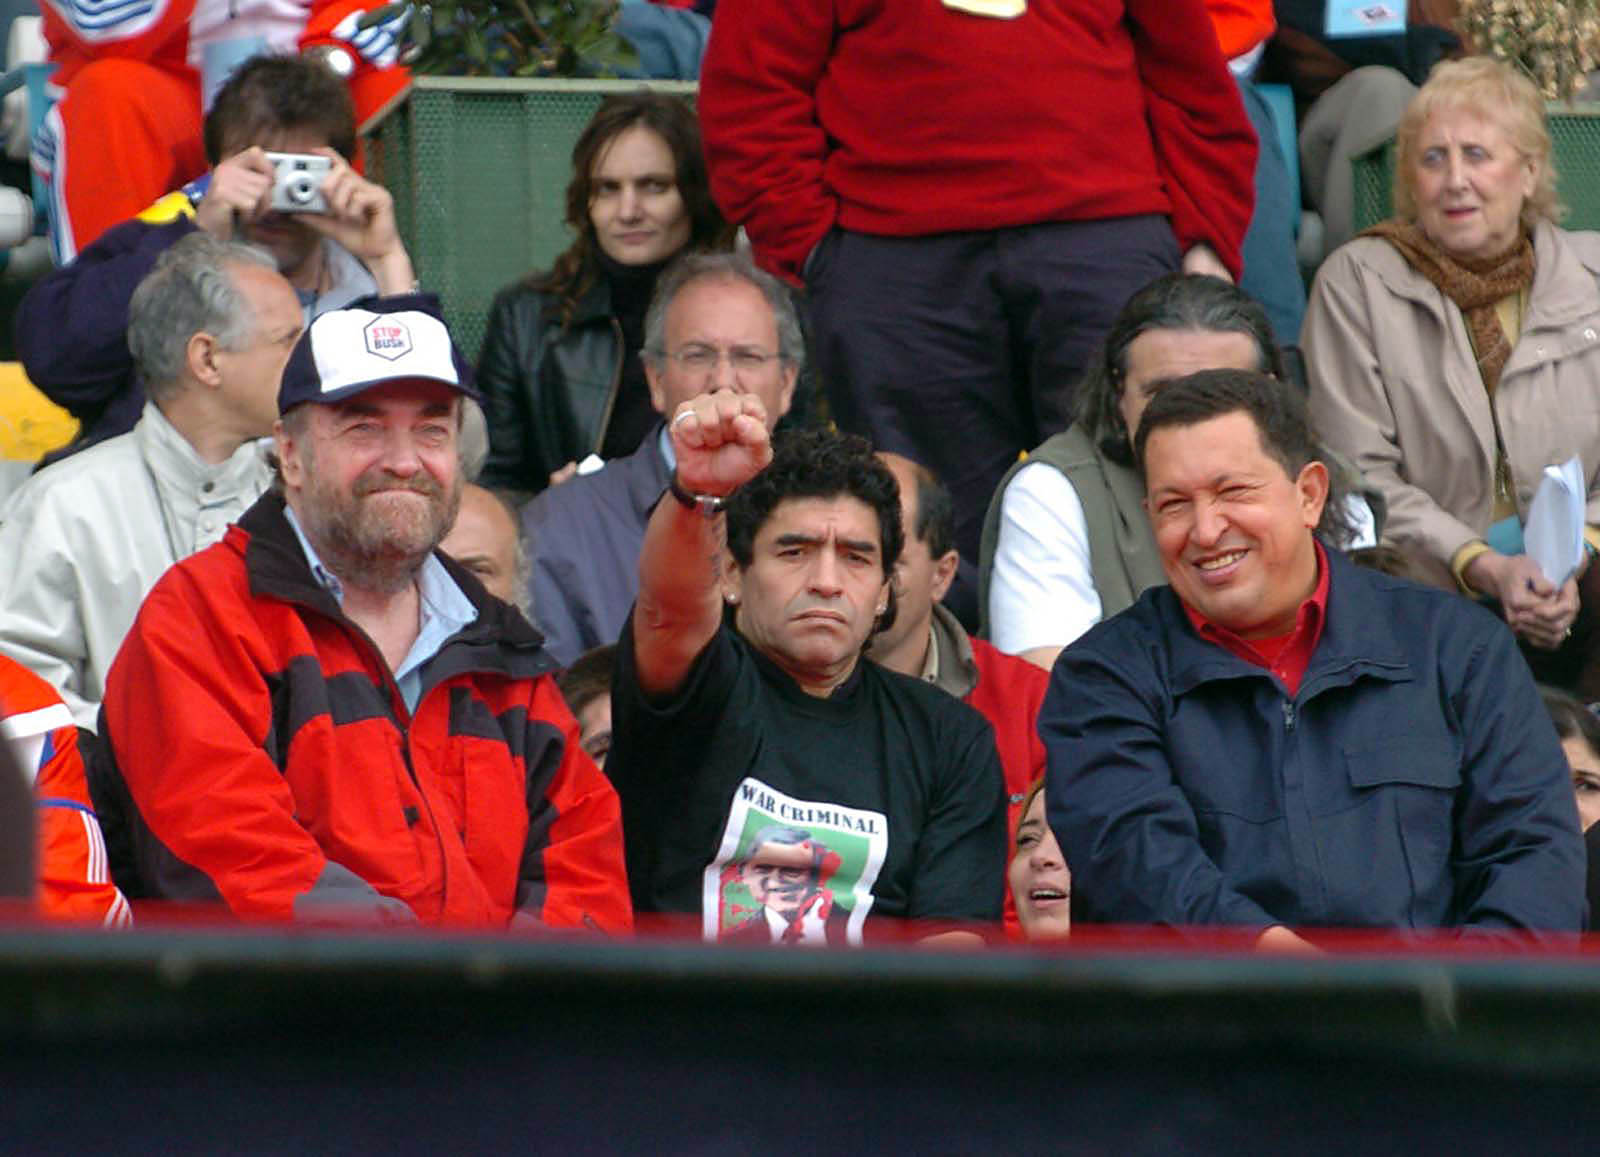  El presidente de la República Bolivariana de Venezuela, Hugo Chávez, junto al exfutbolista, Diego Armando Maradona y el Diputado Nacional, Miguel Bonasso, durante el acto de cierre de la III Cumbre de los Pueblos, realizado en el Estadio Mundialista de Mar del Plata. Foto: Juan Roleri/Télam/lz